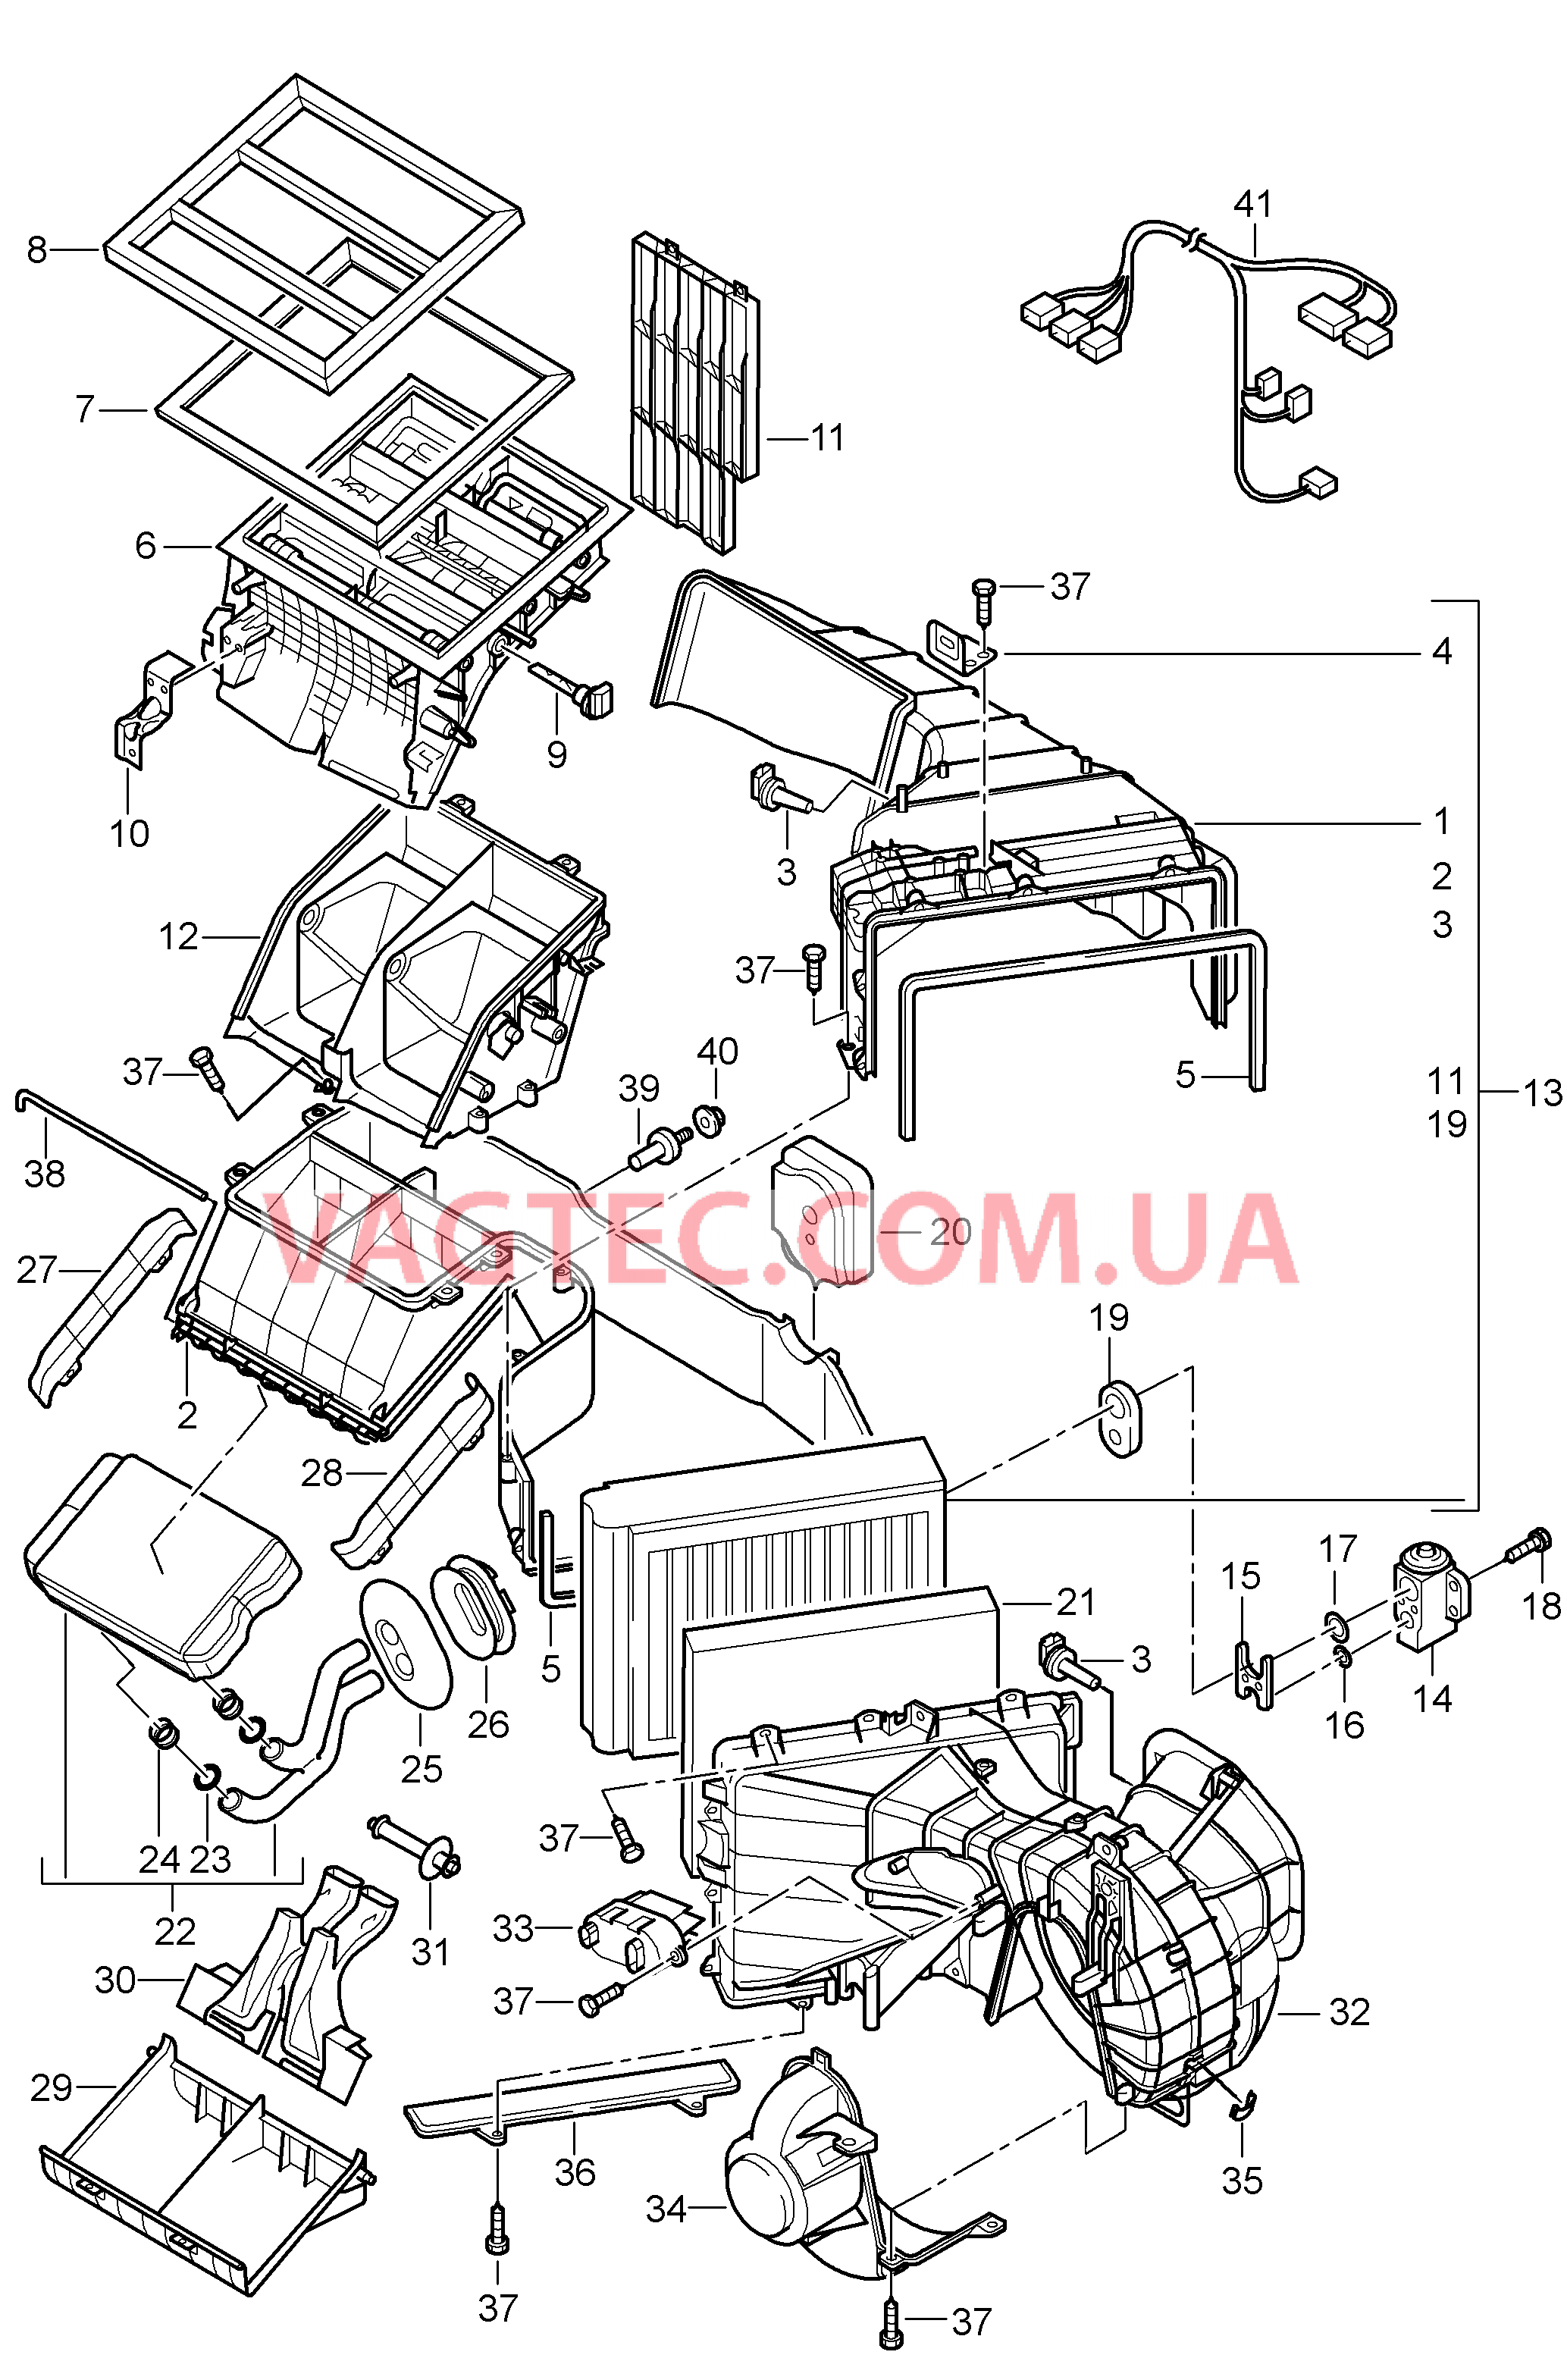 813-040 Кондиционер, передний, Отдельные детали для PORSCHE Cayenne 2003-2006